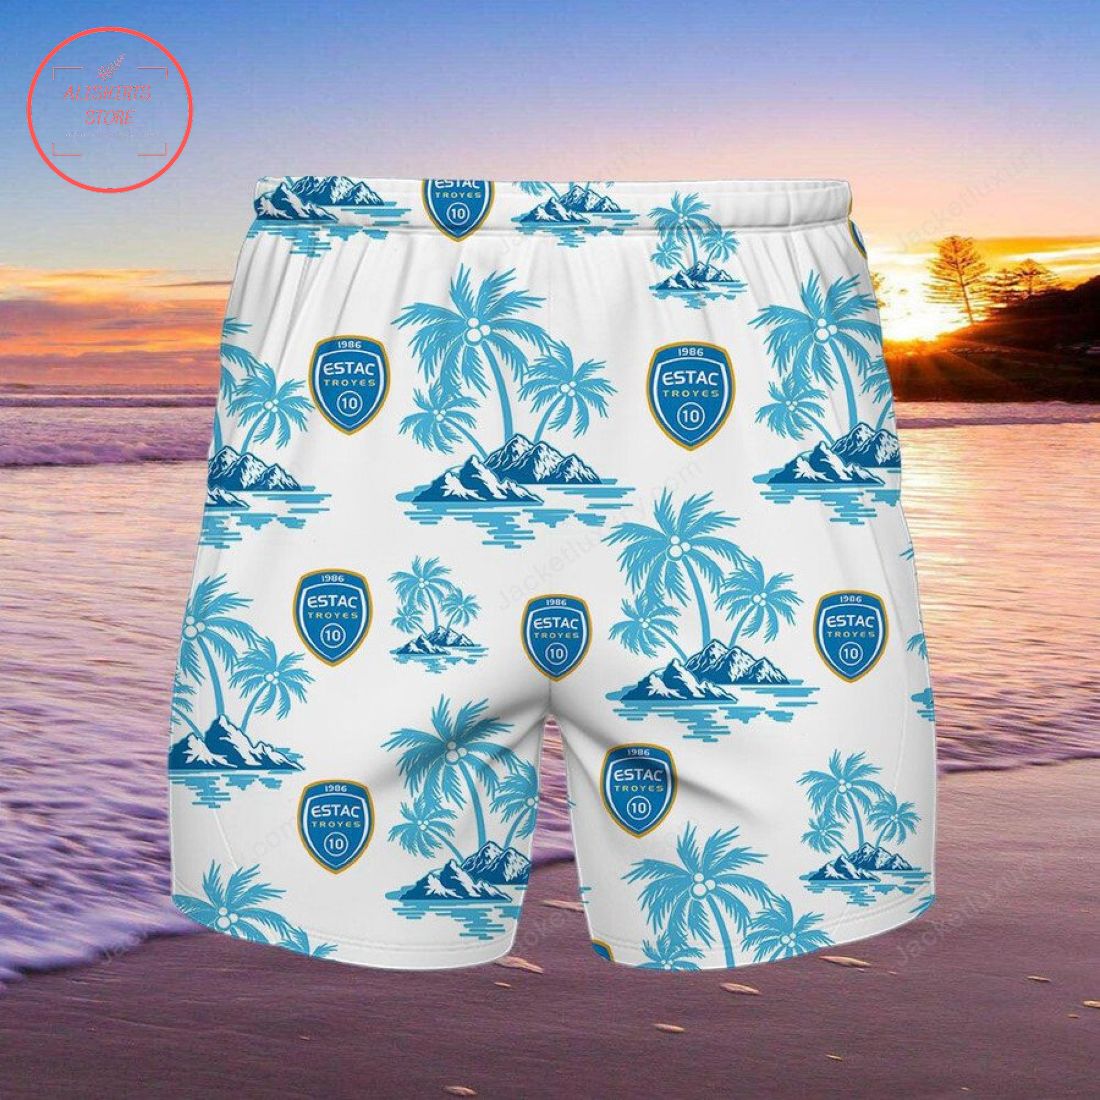 ESTAC Troyes Hawaiian Shirt and Shorts